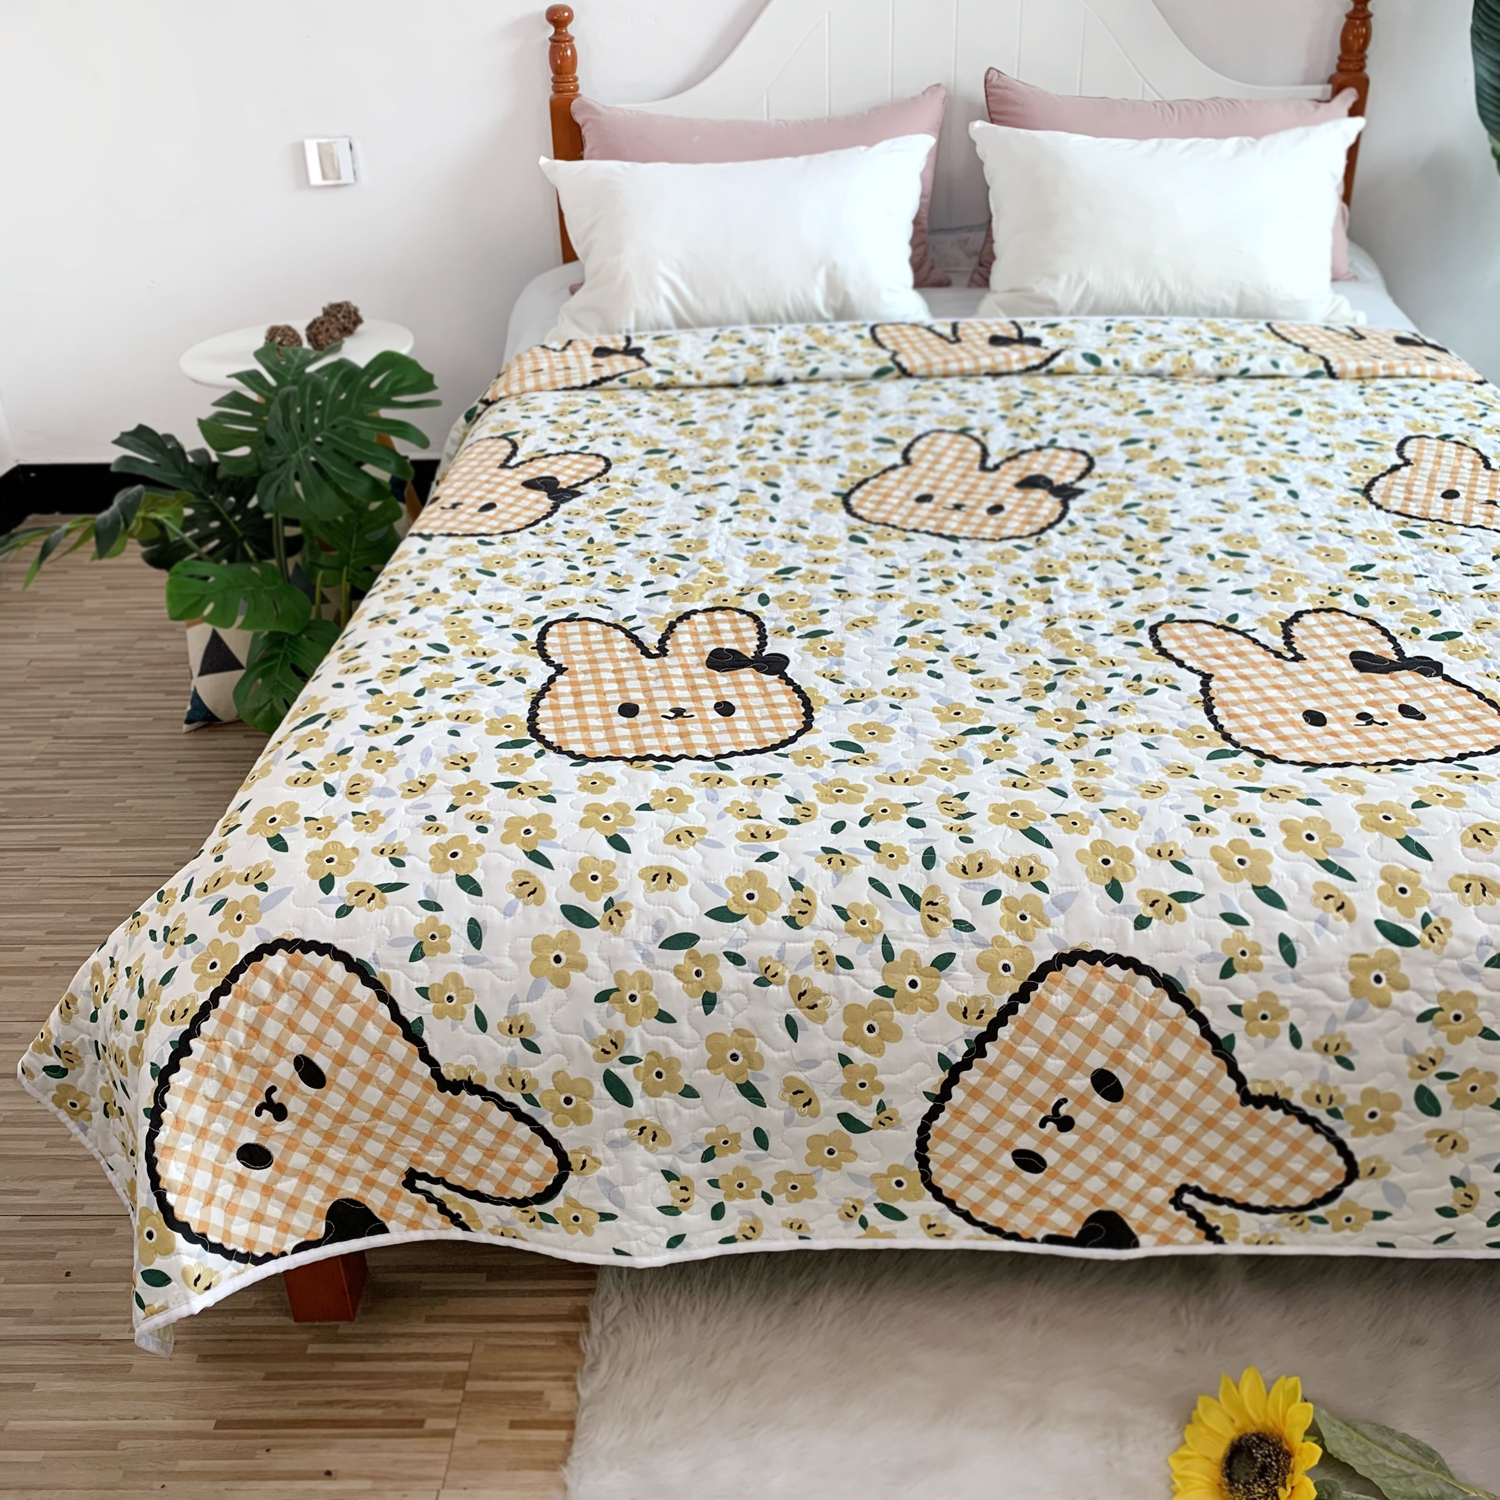 AB款卡通清新可爱床单 大尺寸原单大牌夏凉床盖夹棉绗缝被铺花朵